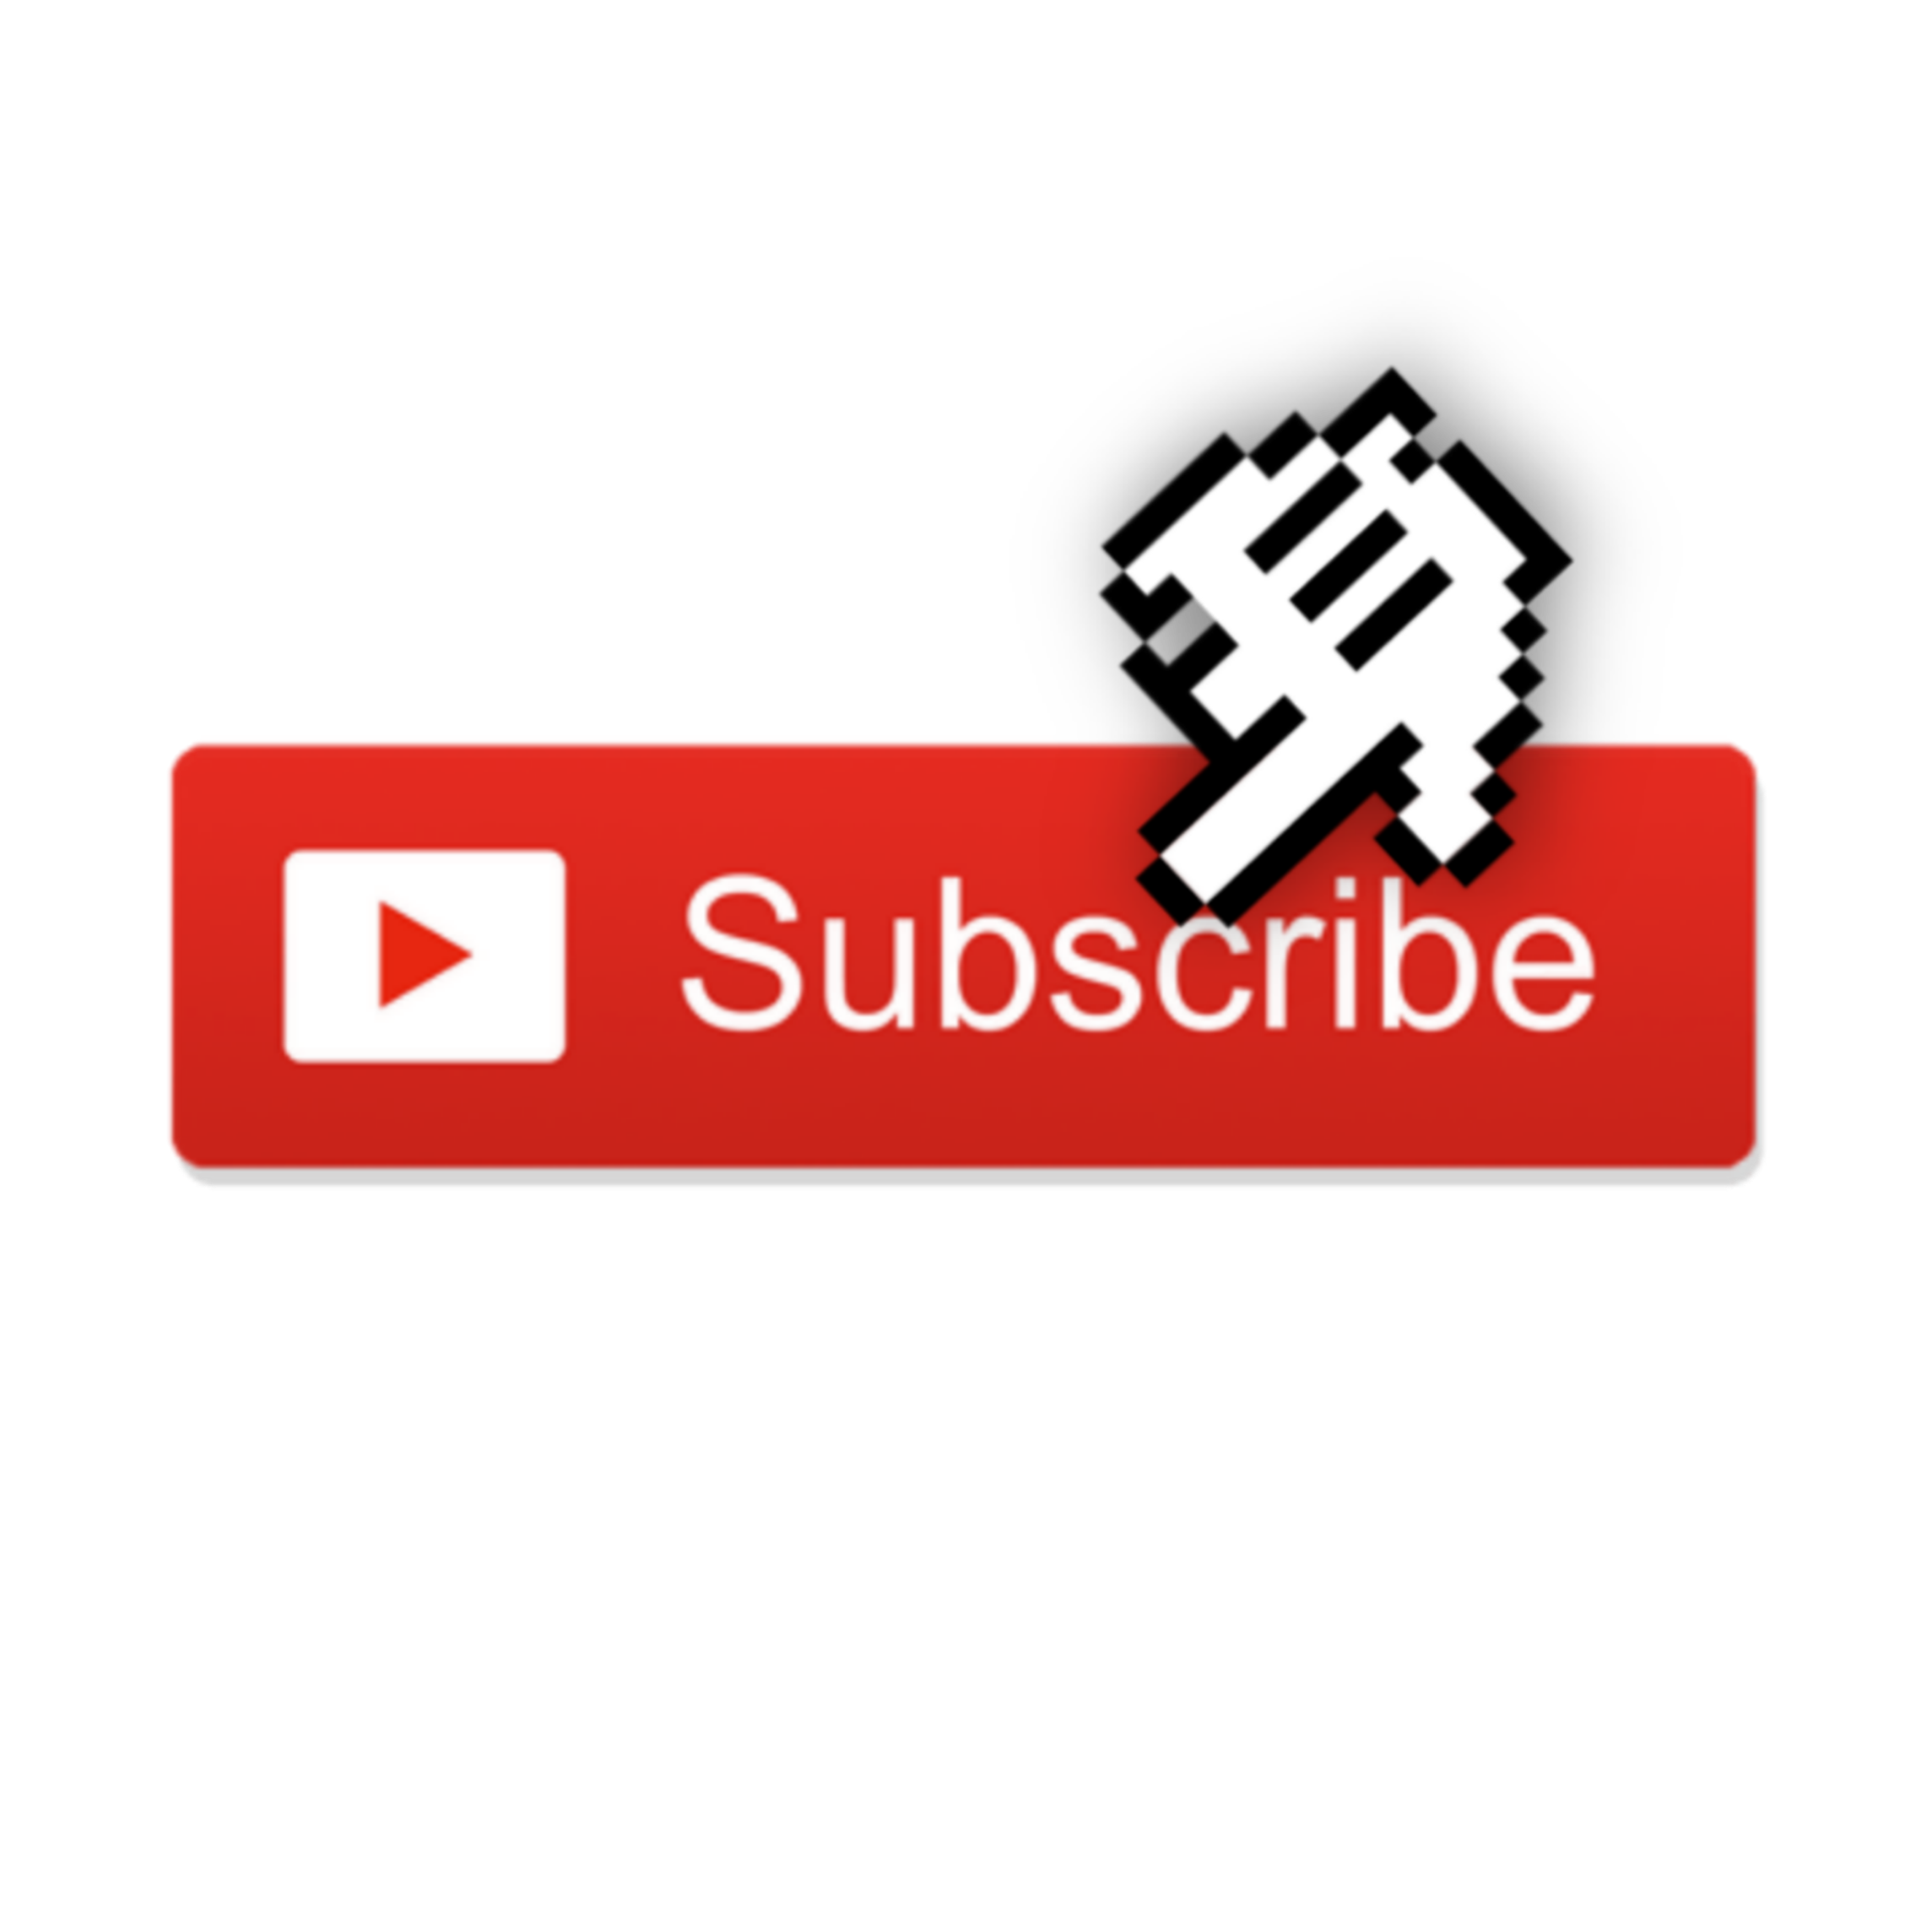 Subscribe shares. Subscribe. Like share Subscribe. Приват Subscribe. Share like Subsk ribe.